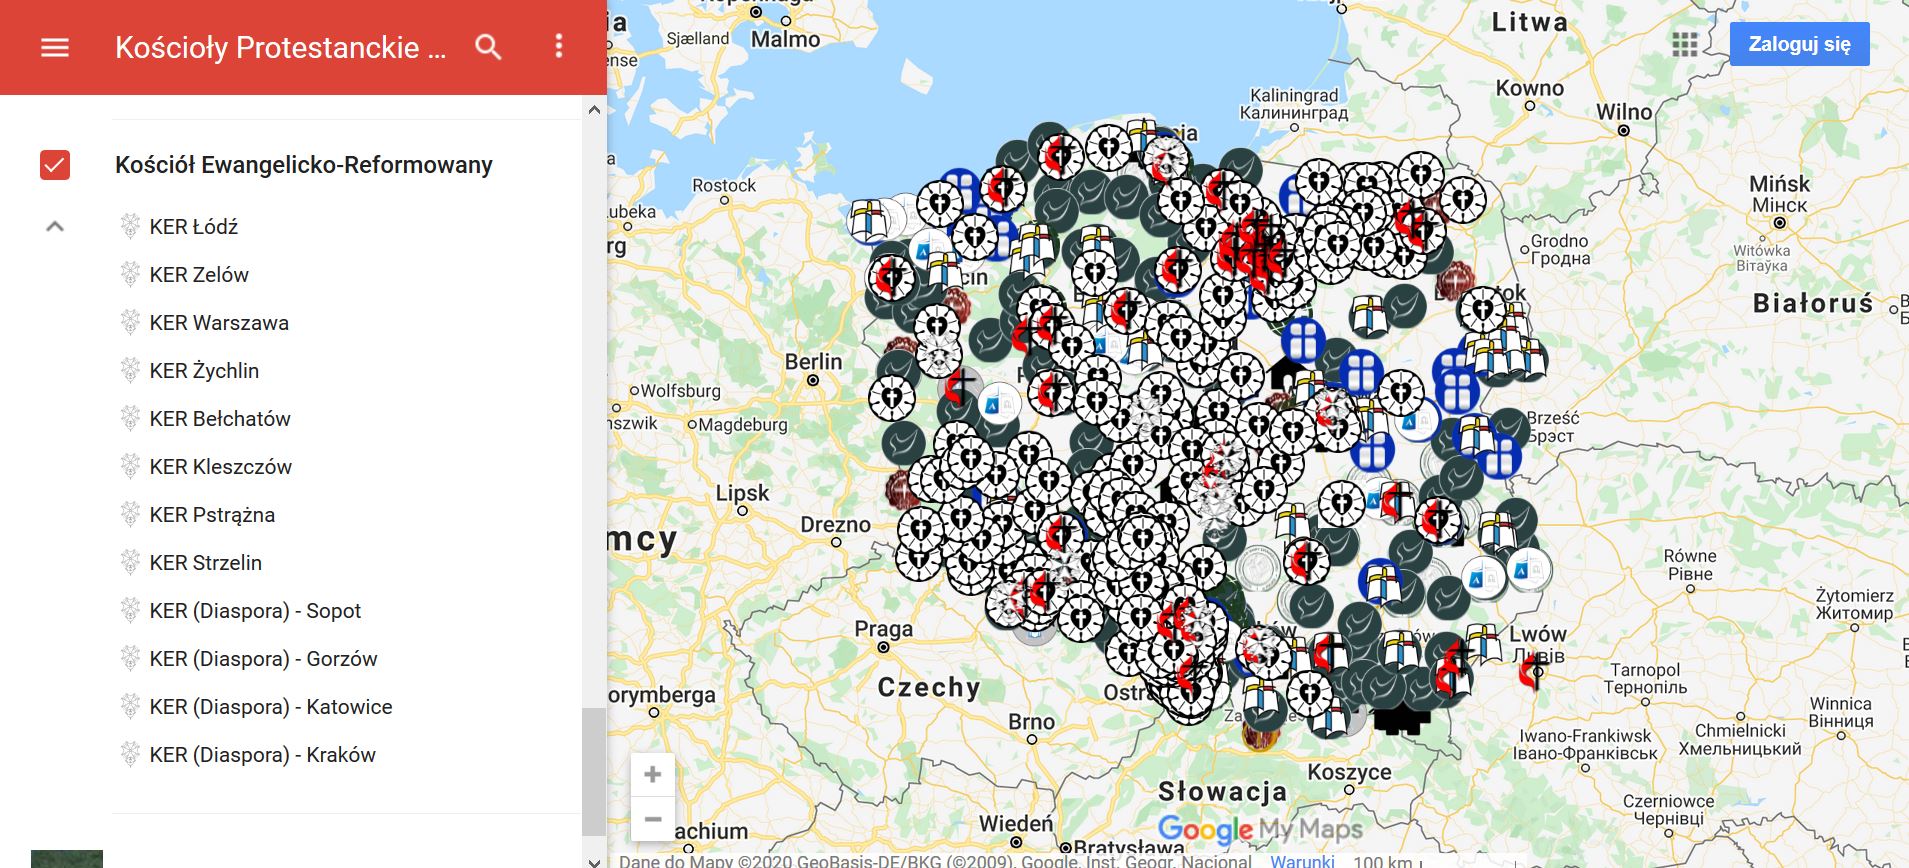 Mapa kosciolow protestanckich w Polsce